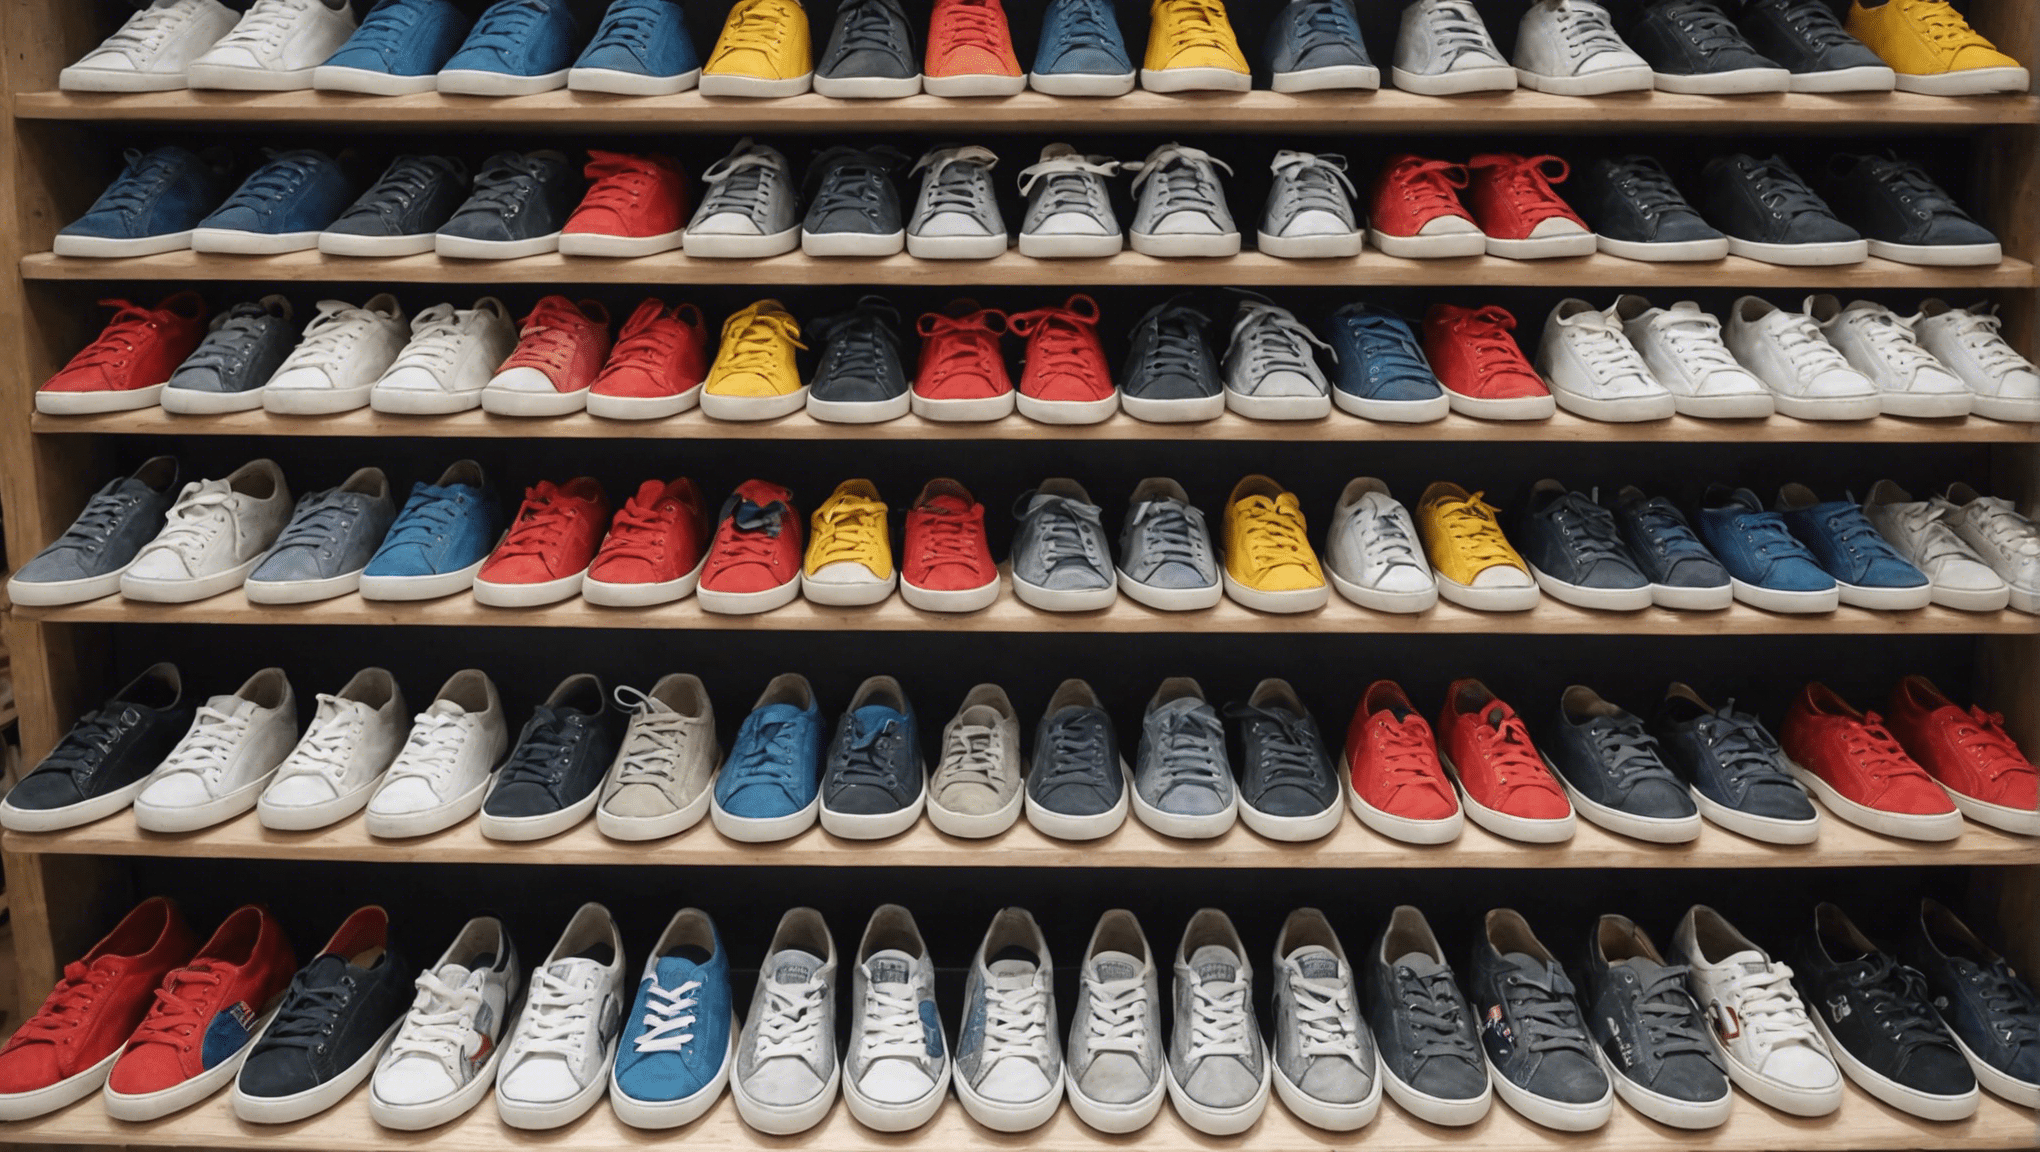 trouvez les baskets de vos rêves dans cette incroyable boutique de périgueux ! découvrez une sélection exceptionnelle de chaussures qui vous fera craquer.